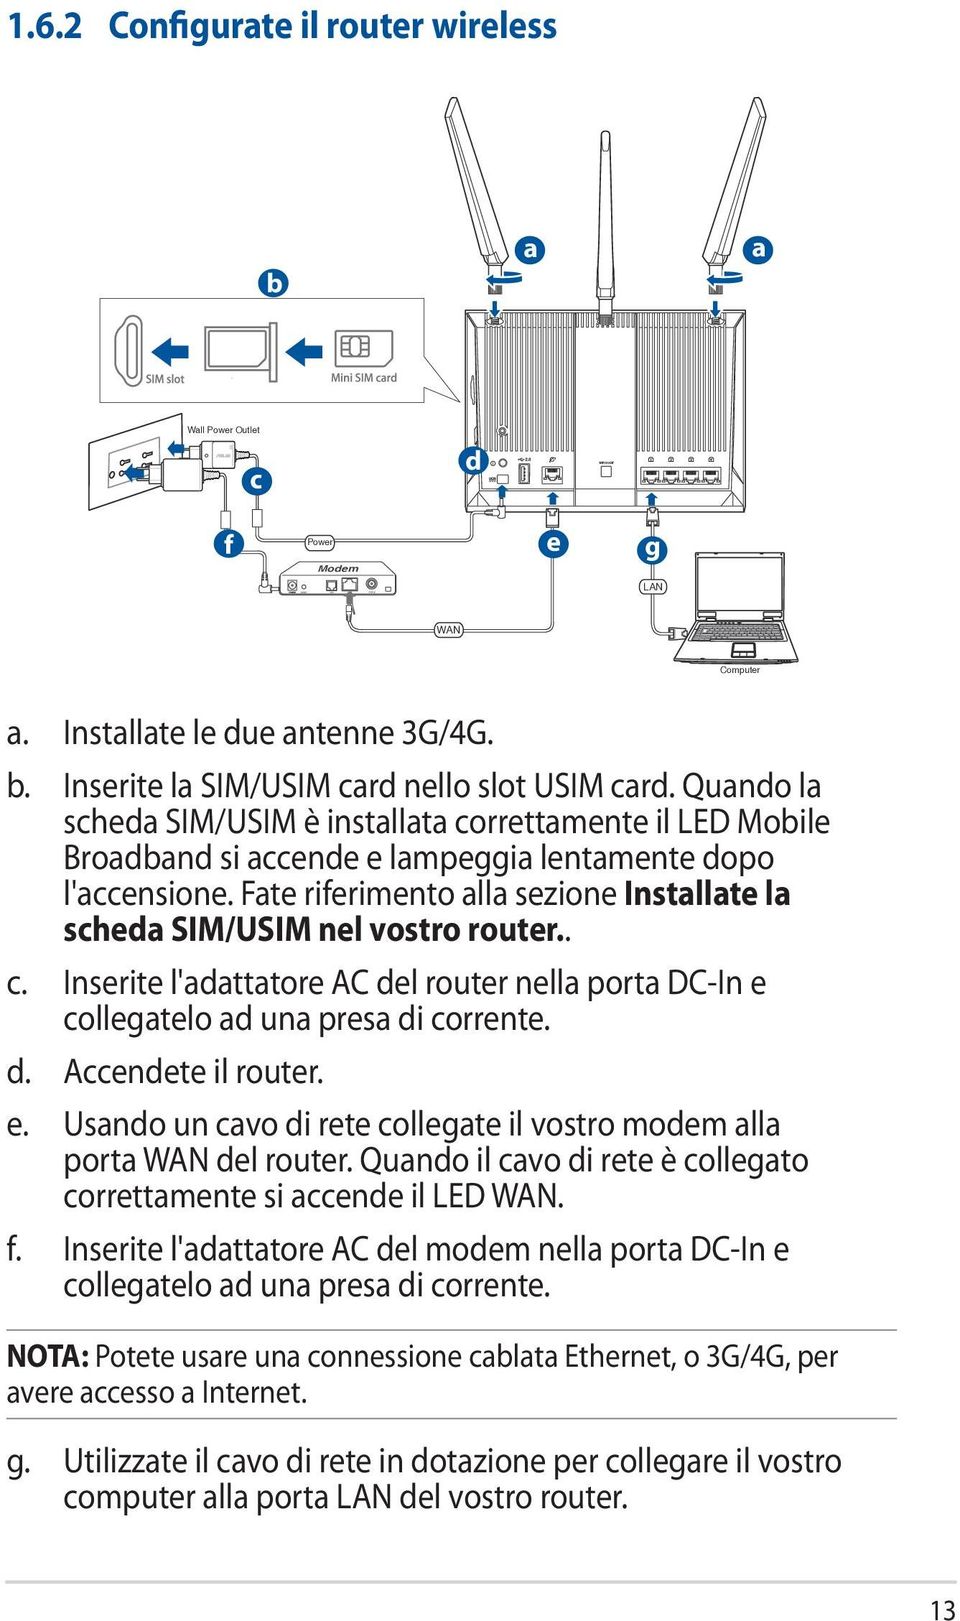 Fate riferimento alla sezione Installate la scheda SIM/USIM nel vostro router.. c. Inserite l'adattatore AC del router nella porta DC-In e collegatelo ad una presa di corrente. d. Accendete il router.